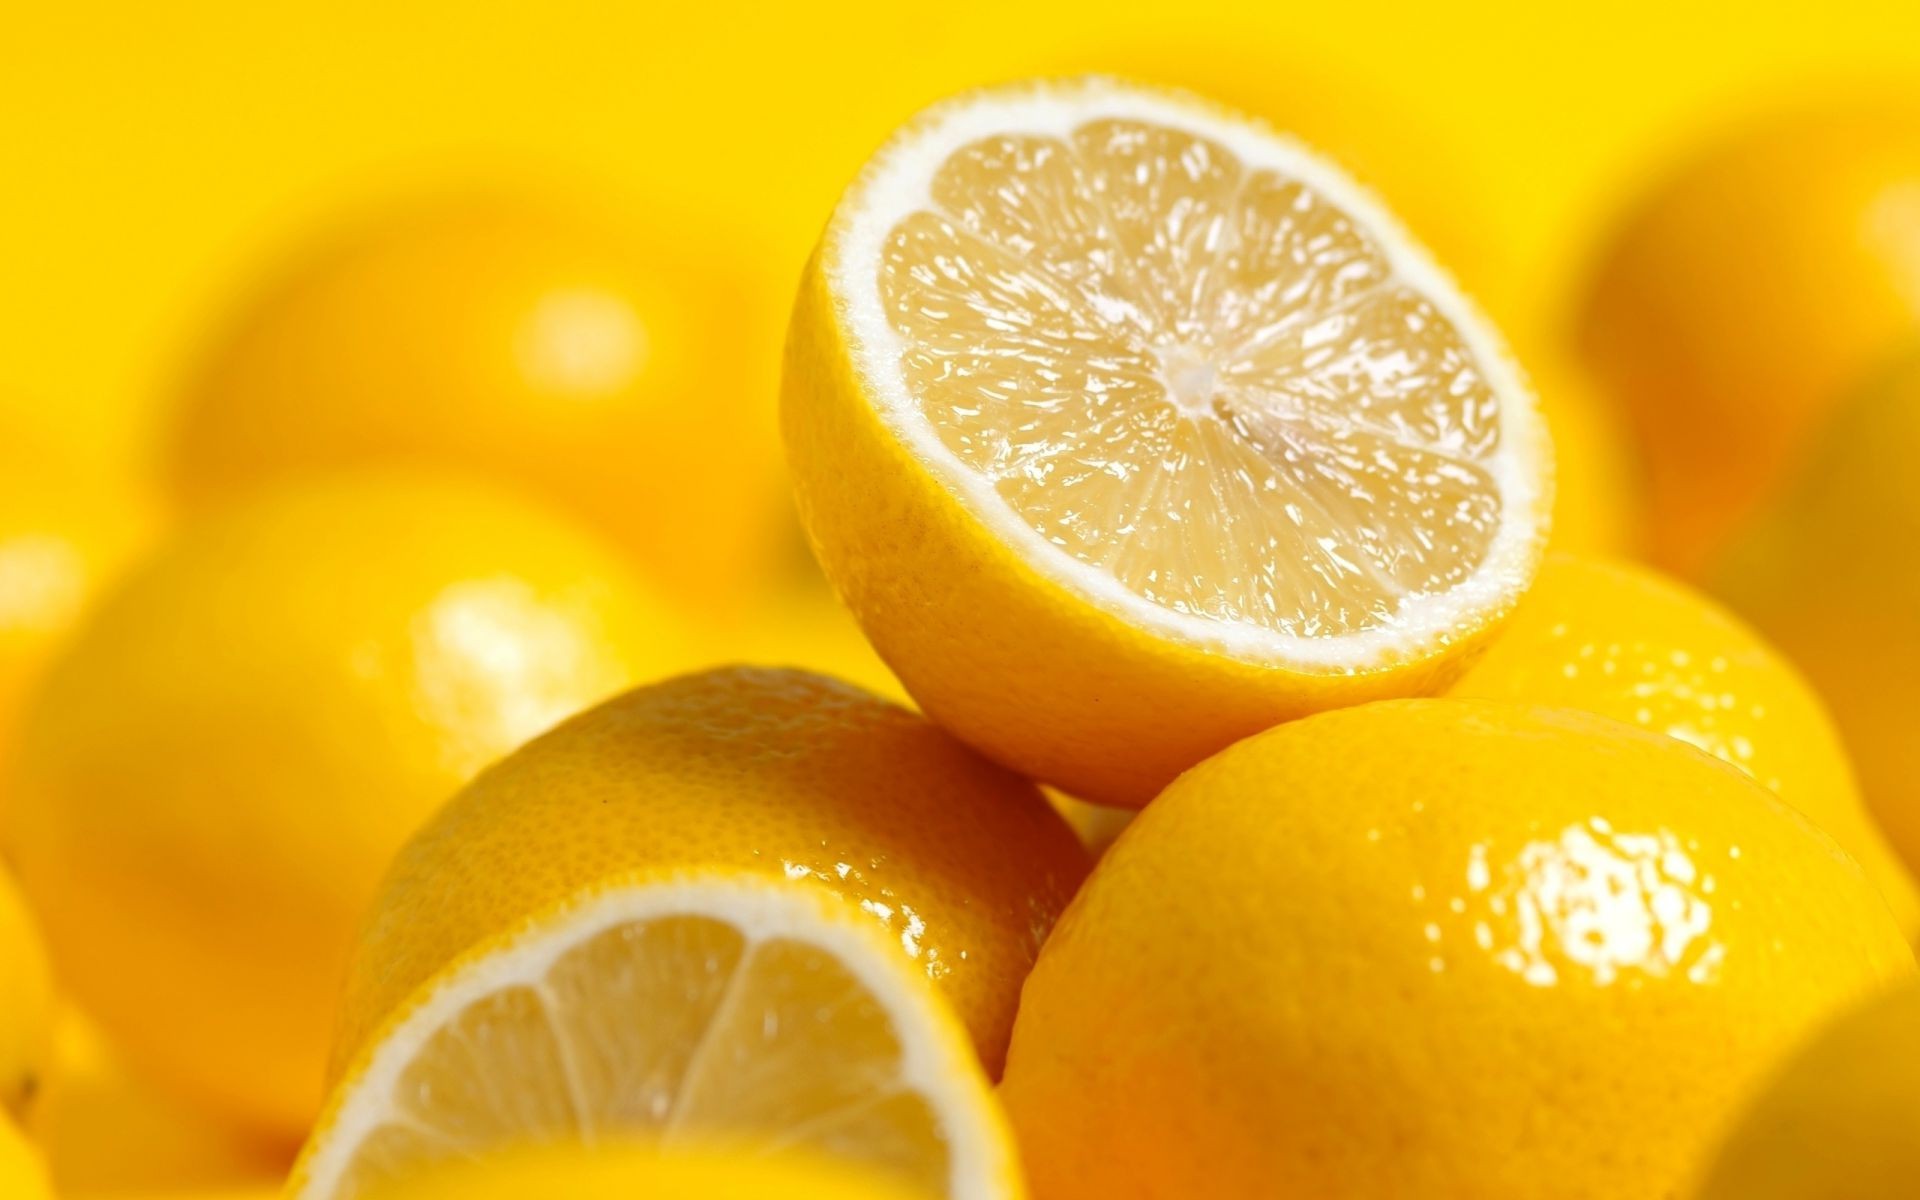 фрукты цитрусовые сочные лимон сок здоровья еда здоровый кондитерское изделие тропический извести кисло яркий рабочего стола изолированные цвет лимонад